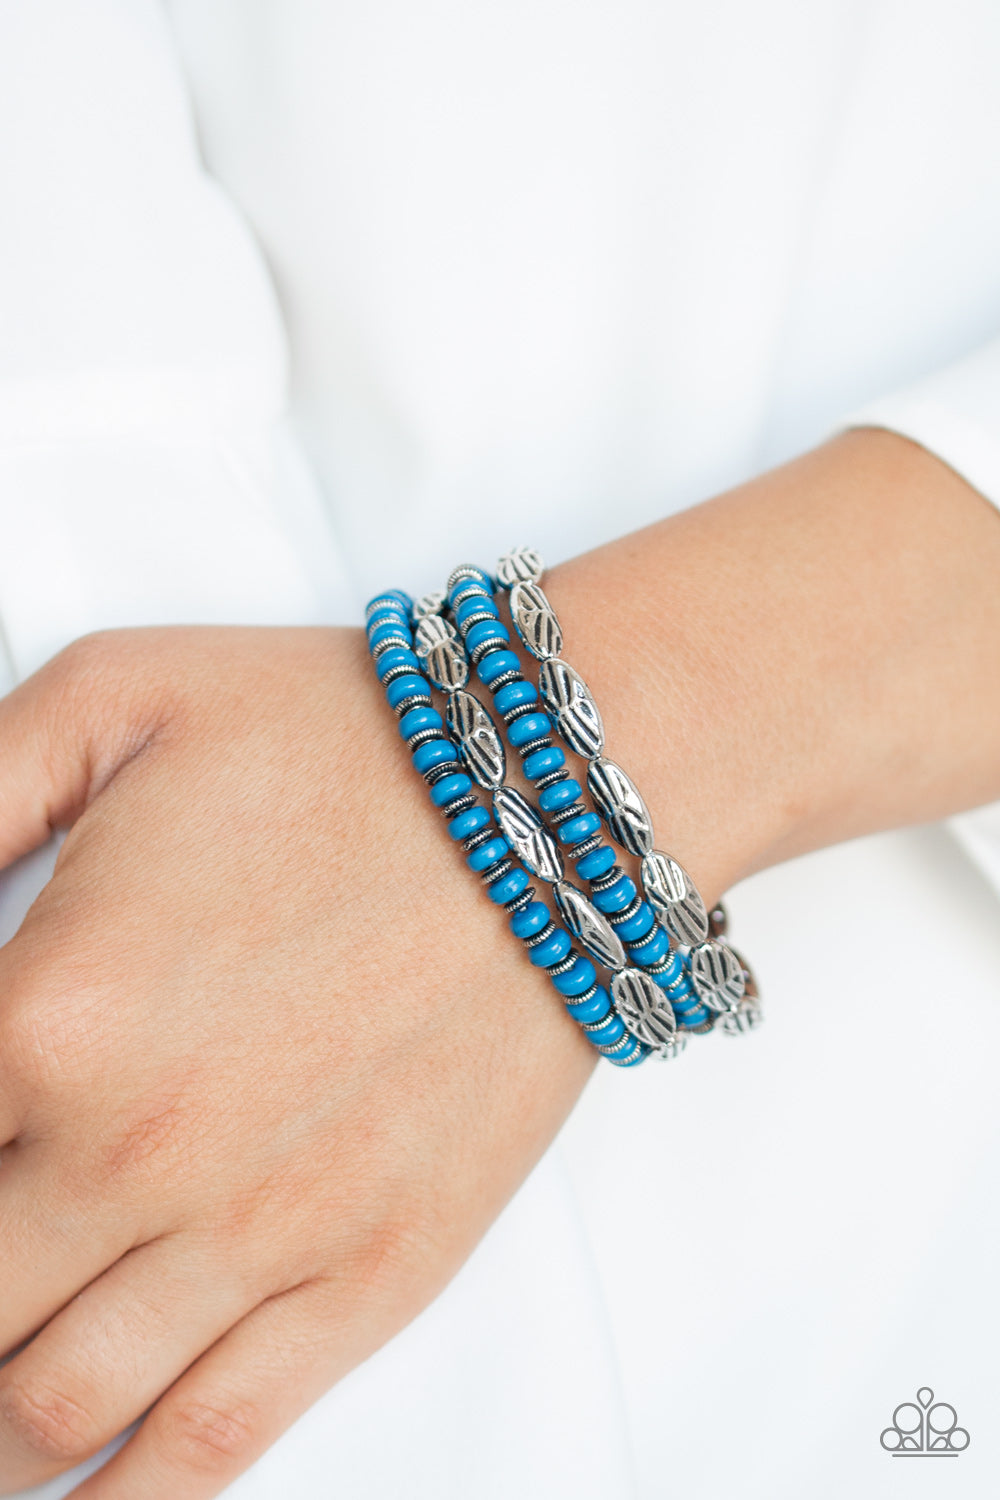 Wild Wonder - Blue bracelet